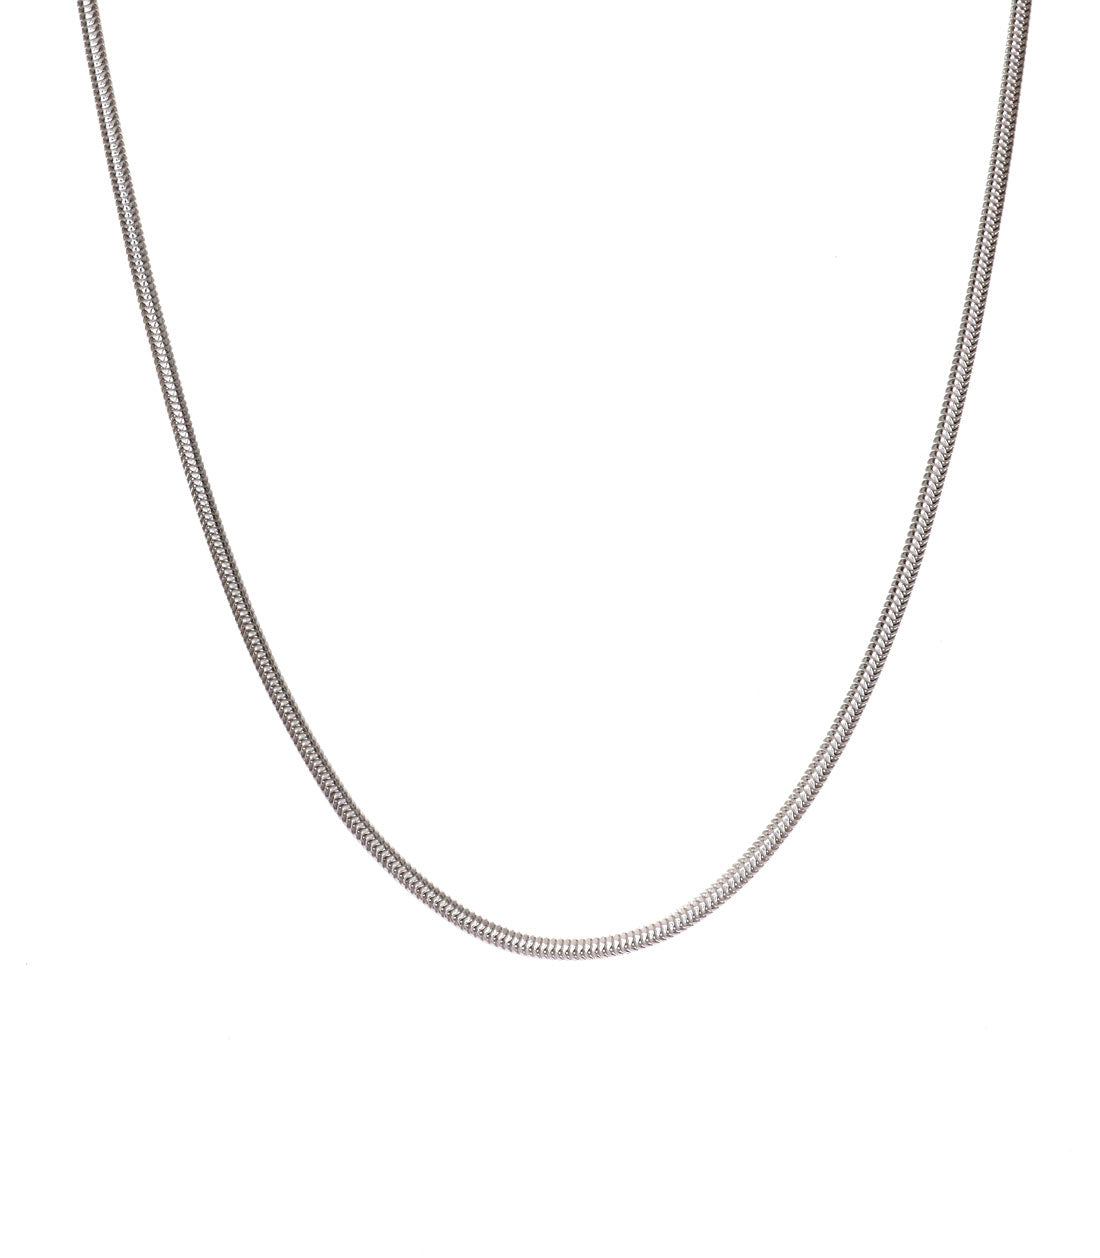 11mm Woven Snake Silver Necklace | Silverwow.net – SilverWow™